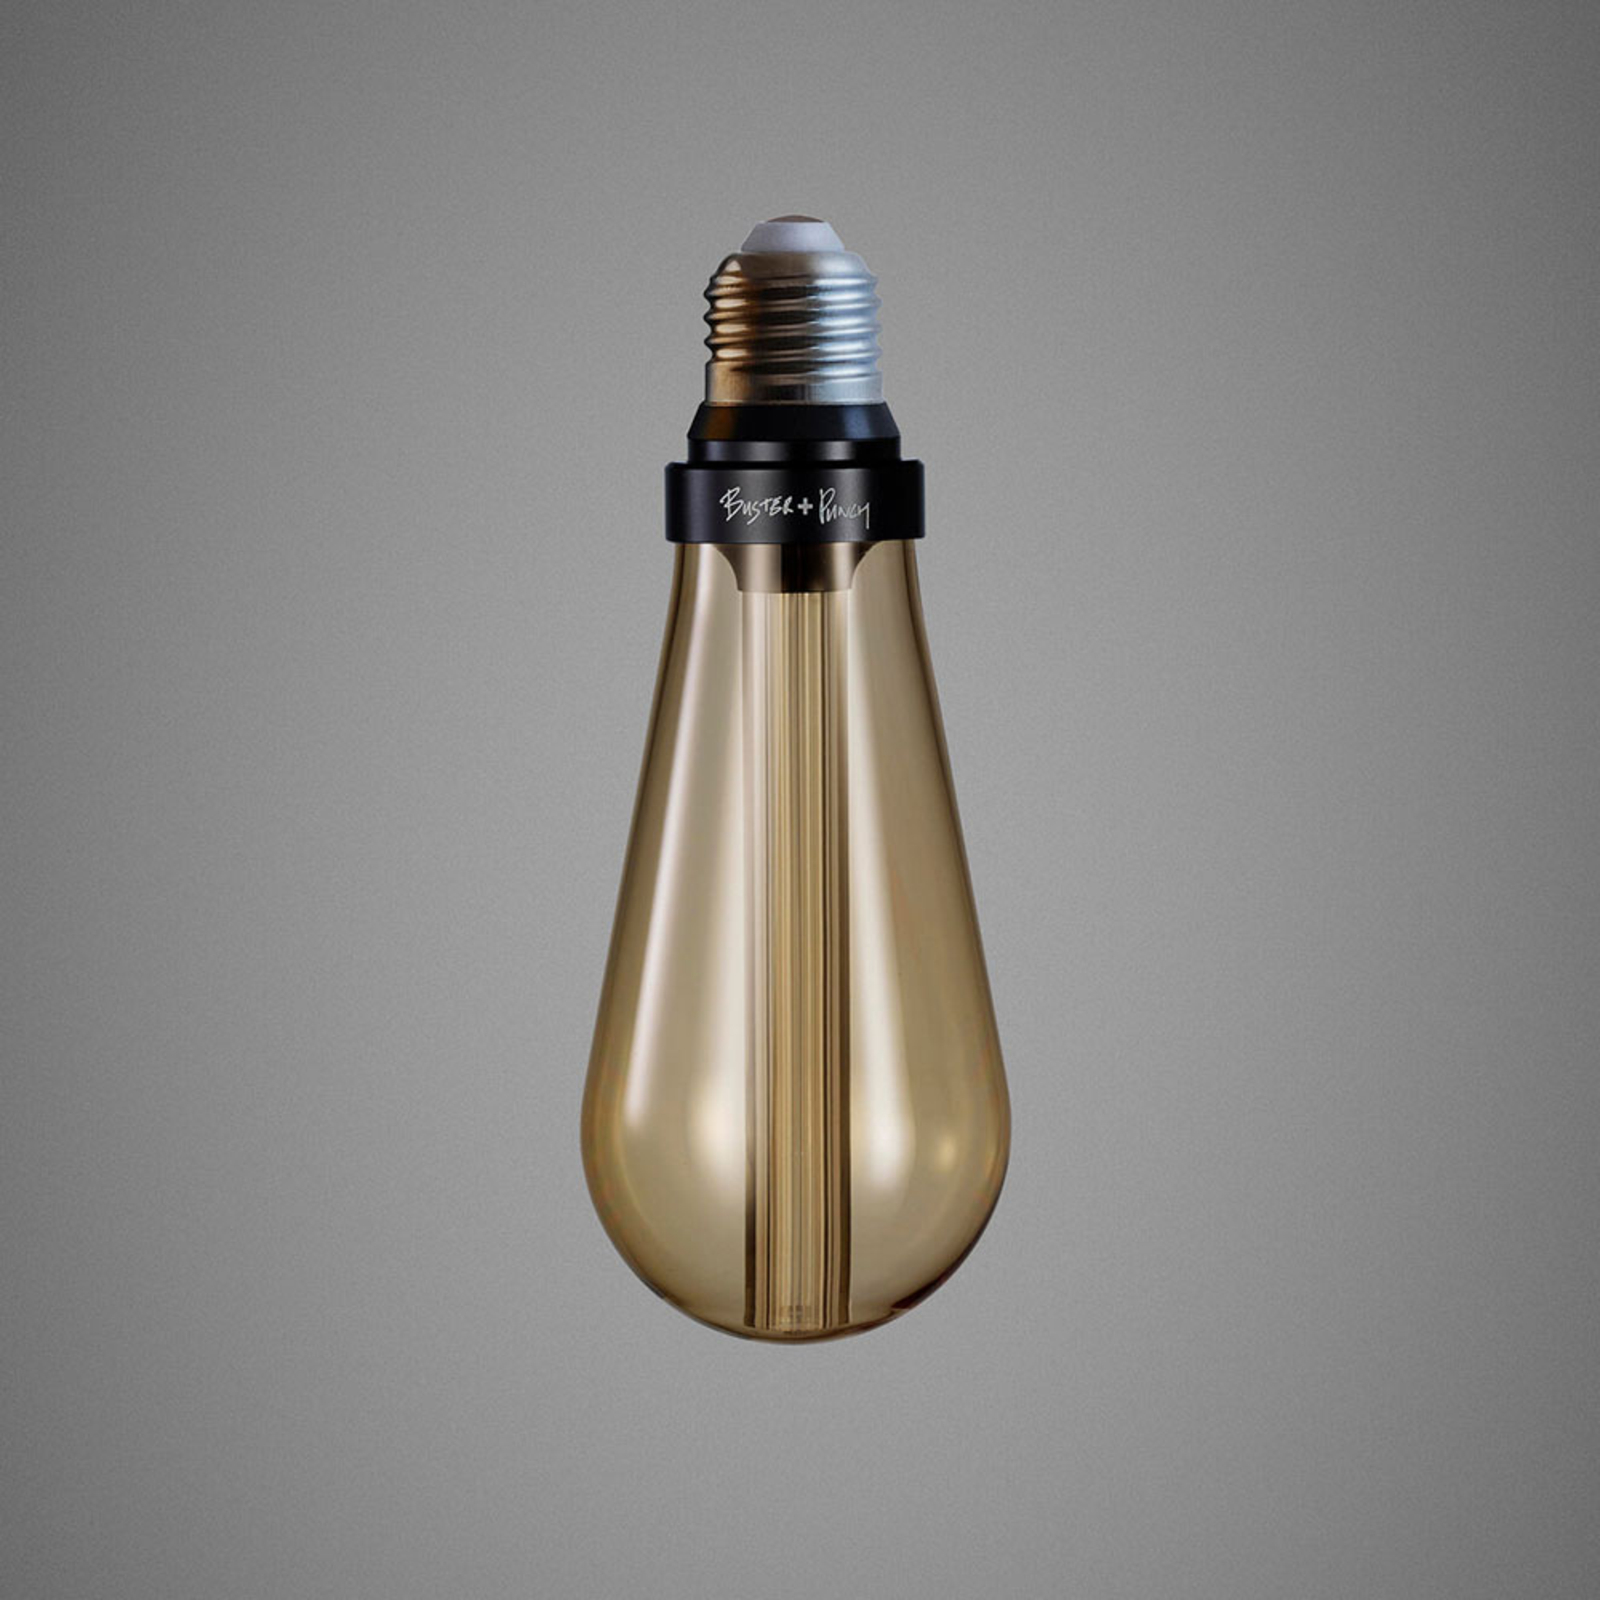 Lampada Buster + Punch LED E27 2W regulável em dourado